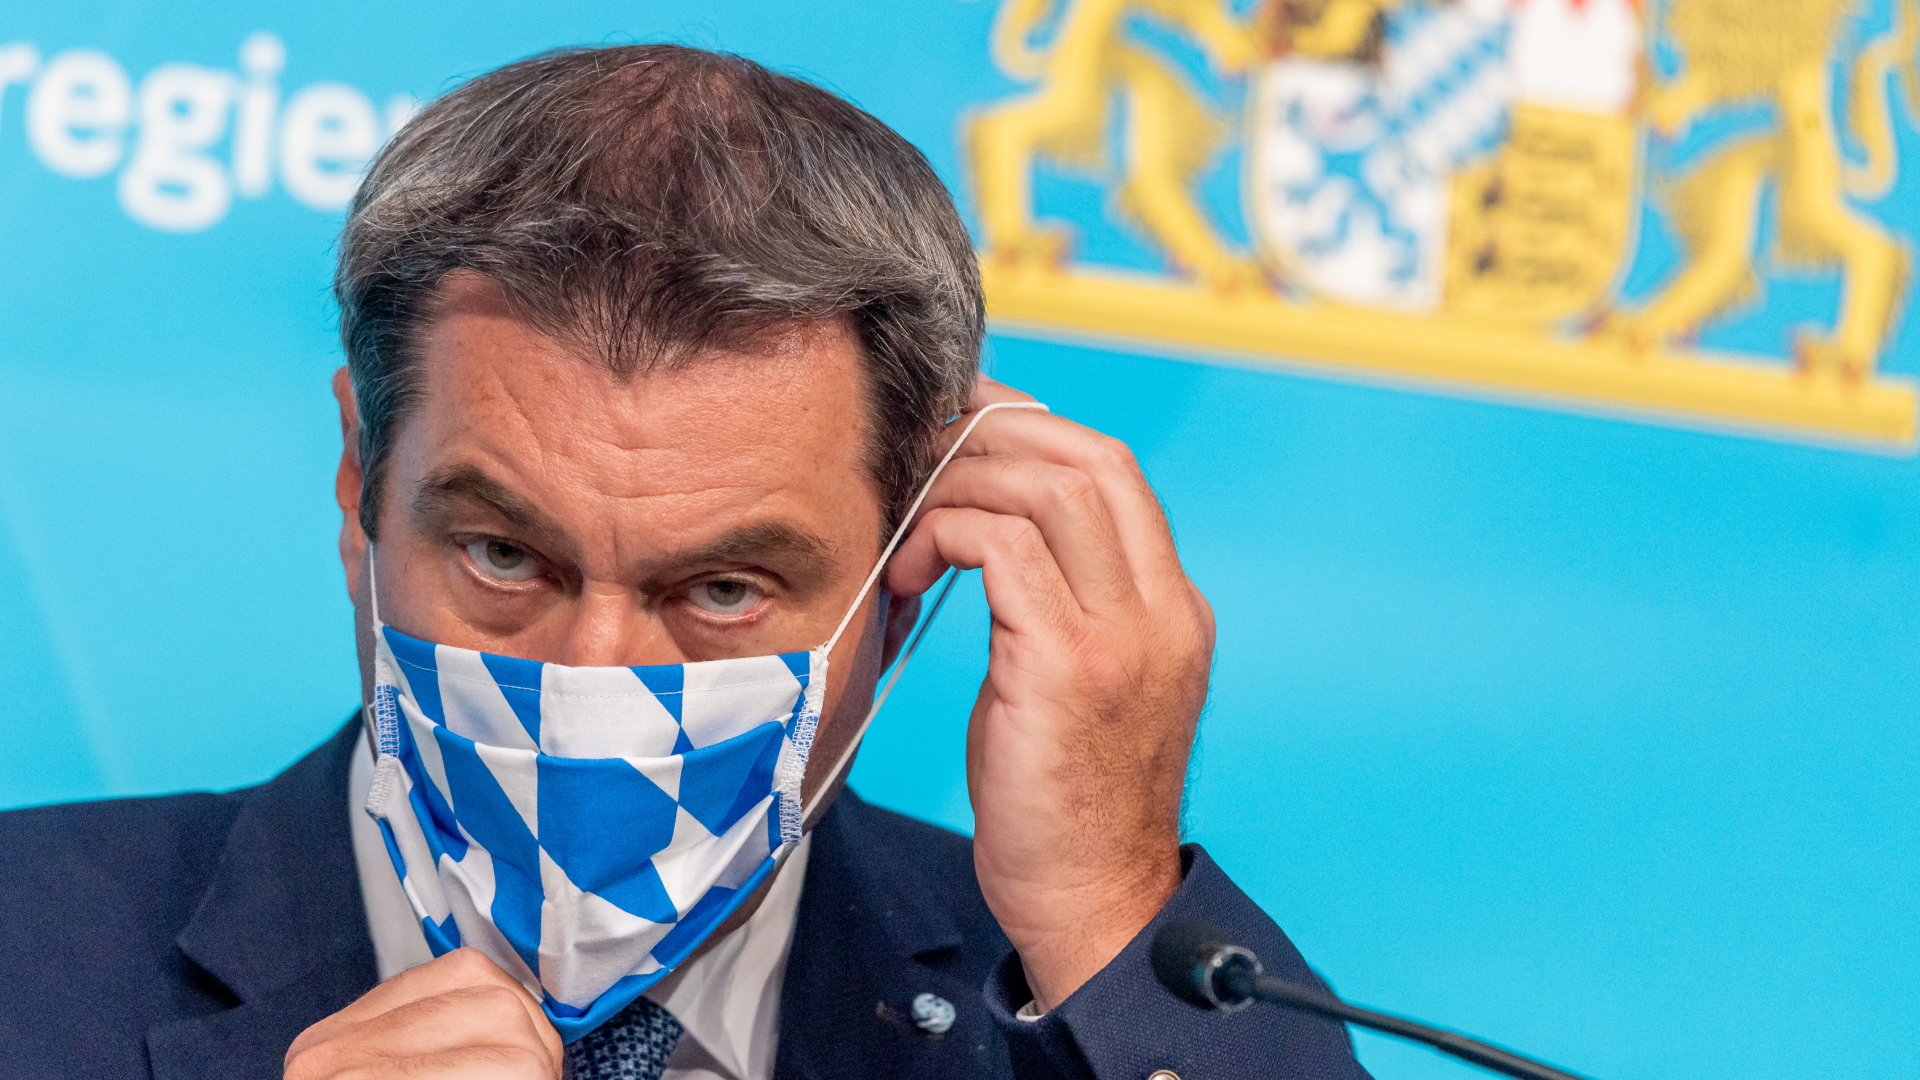 Bayerns Ministerpräsident Markus Söder zieht sich eine Schutzmaske mit bayerischem Rautenmotiv an. | Bildquelle: dpa